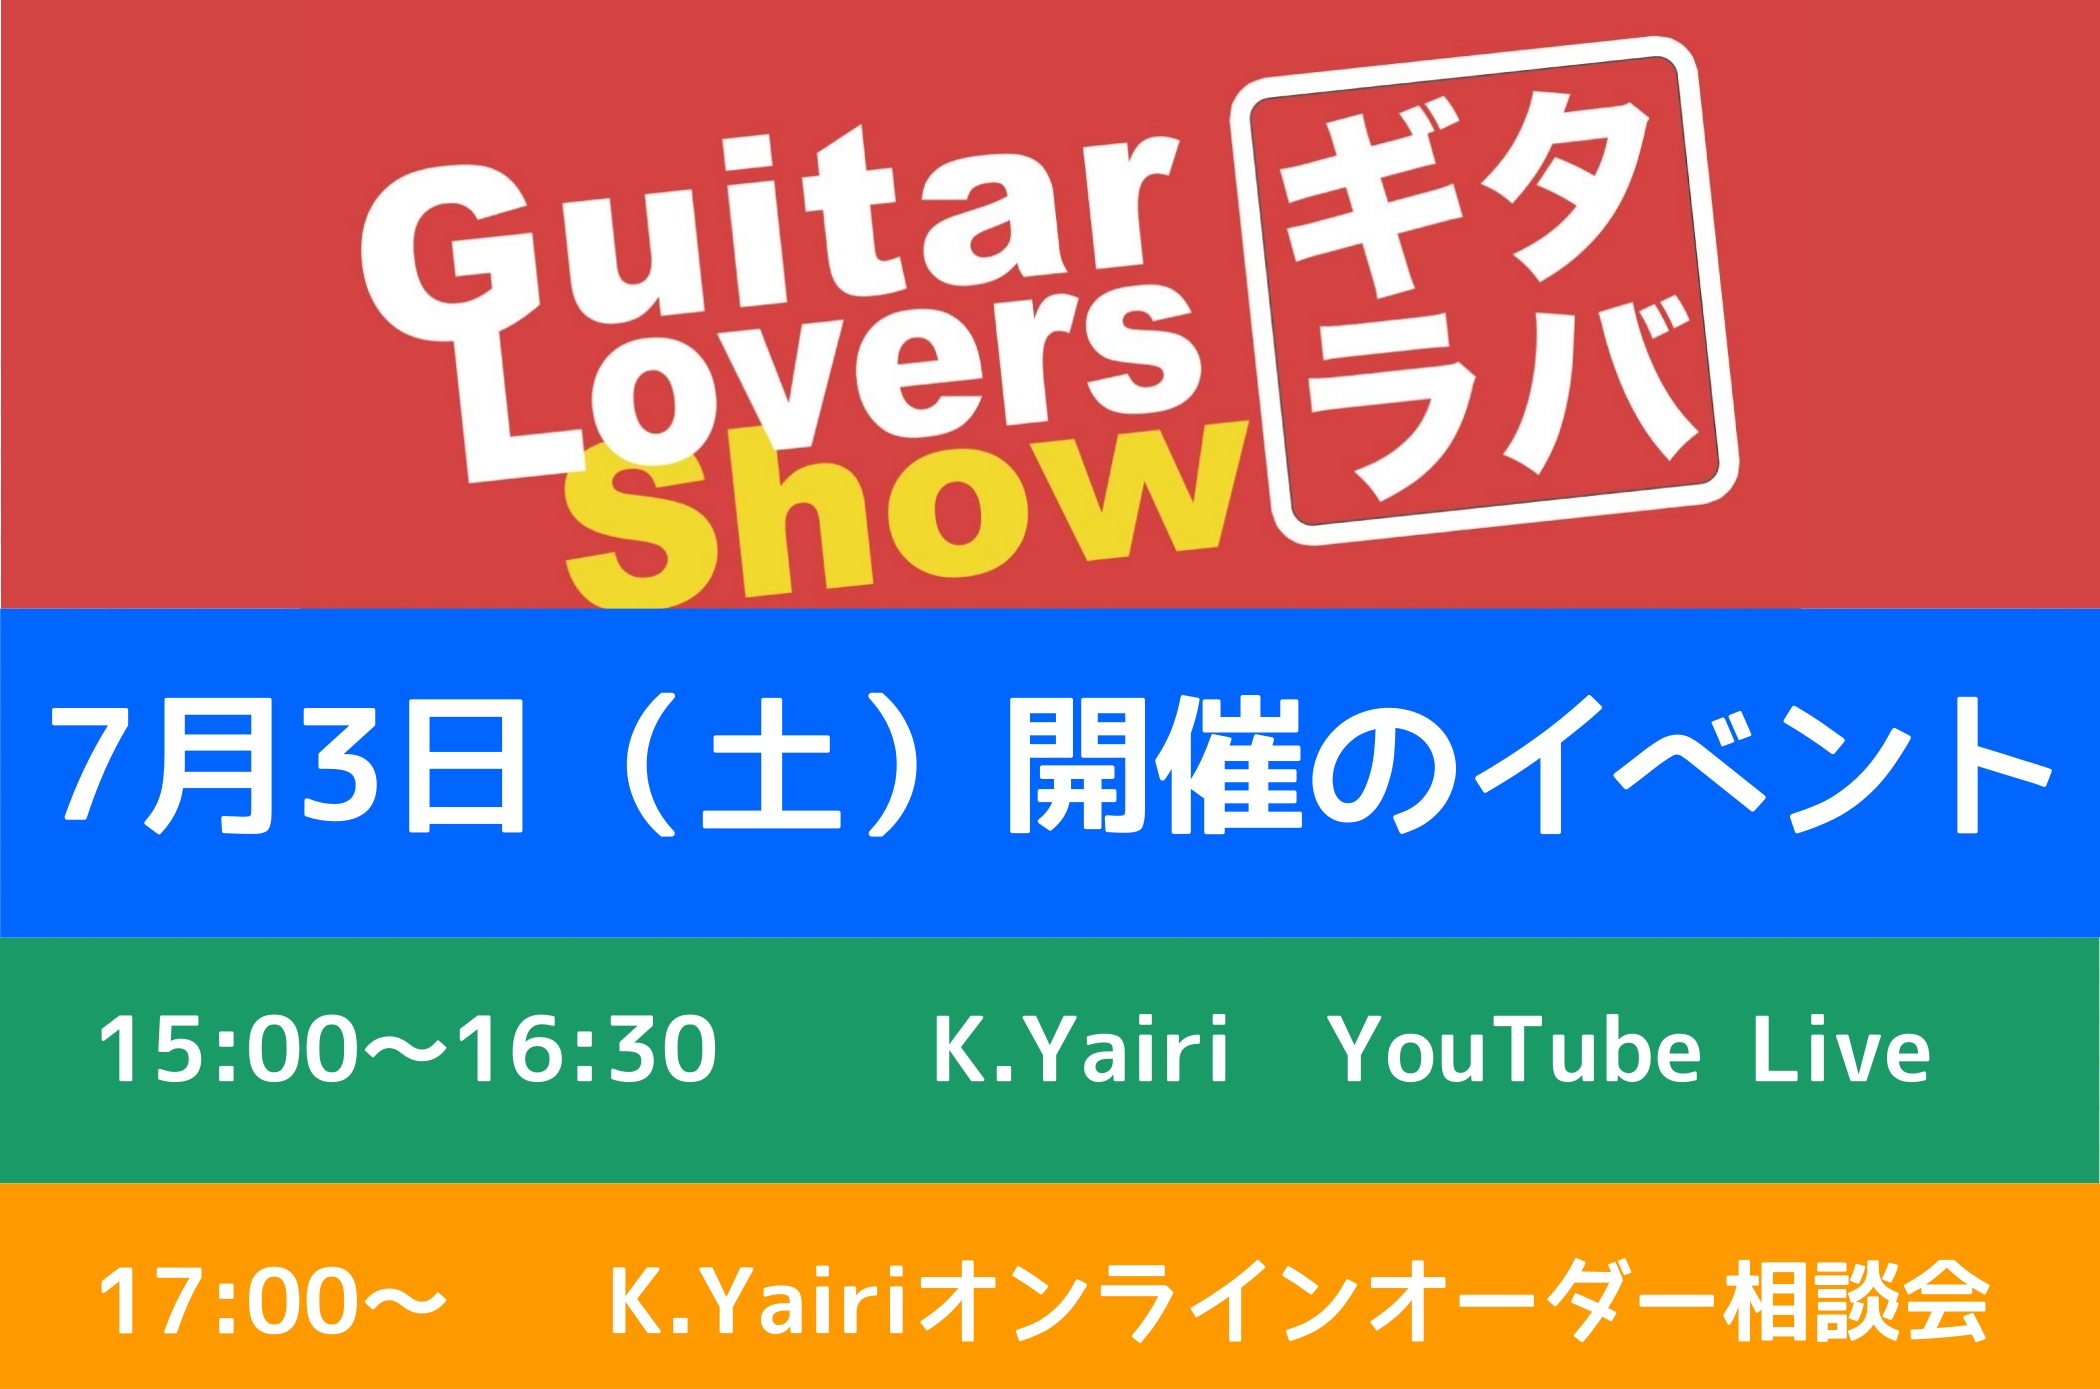 皆様こんにちは。]]全国のギター好きが「ギター愛」で繋がるプロジェクト！略して『ギタラバ』]]本日は名古 屋パルコ会場で実施される2つのイベントのご案内をさせて頂きます。 *7/3(土)開催 **15：00-16：30 **YouTubeにて生配信イベントを開催 ヤイリから職人[!!森幸久氏!!]を […]